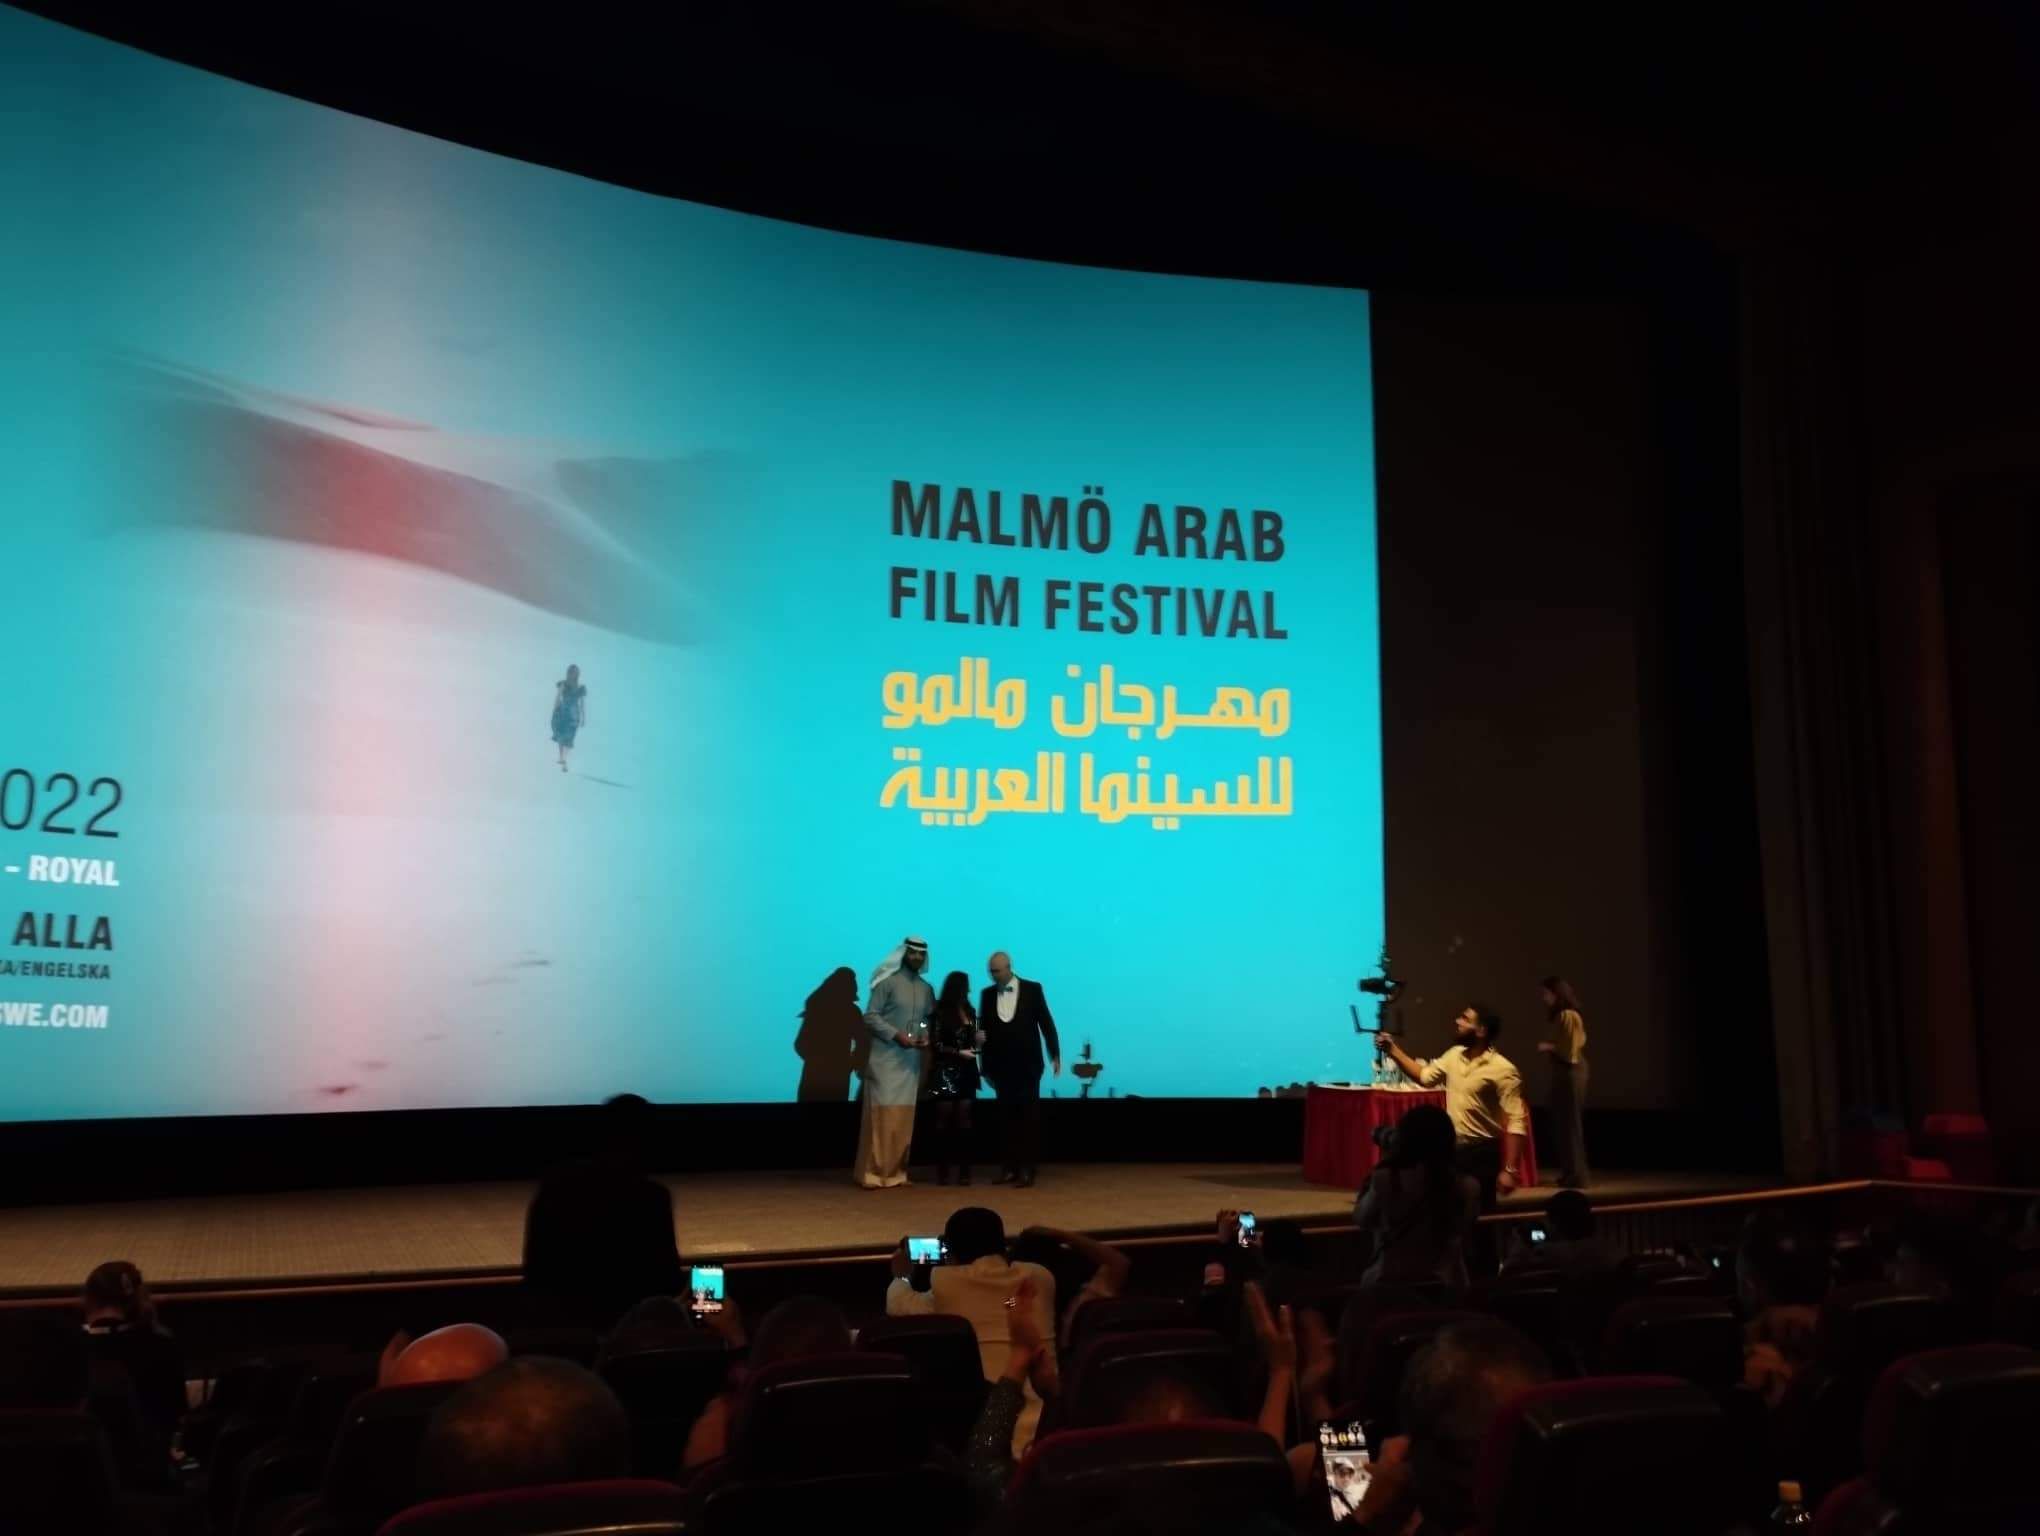 الوثائقي من القاهرة يفوز بجائزة لجنة تحكيم مهرجان مالمو للسينما العربية (6)